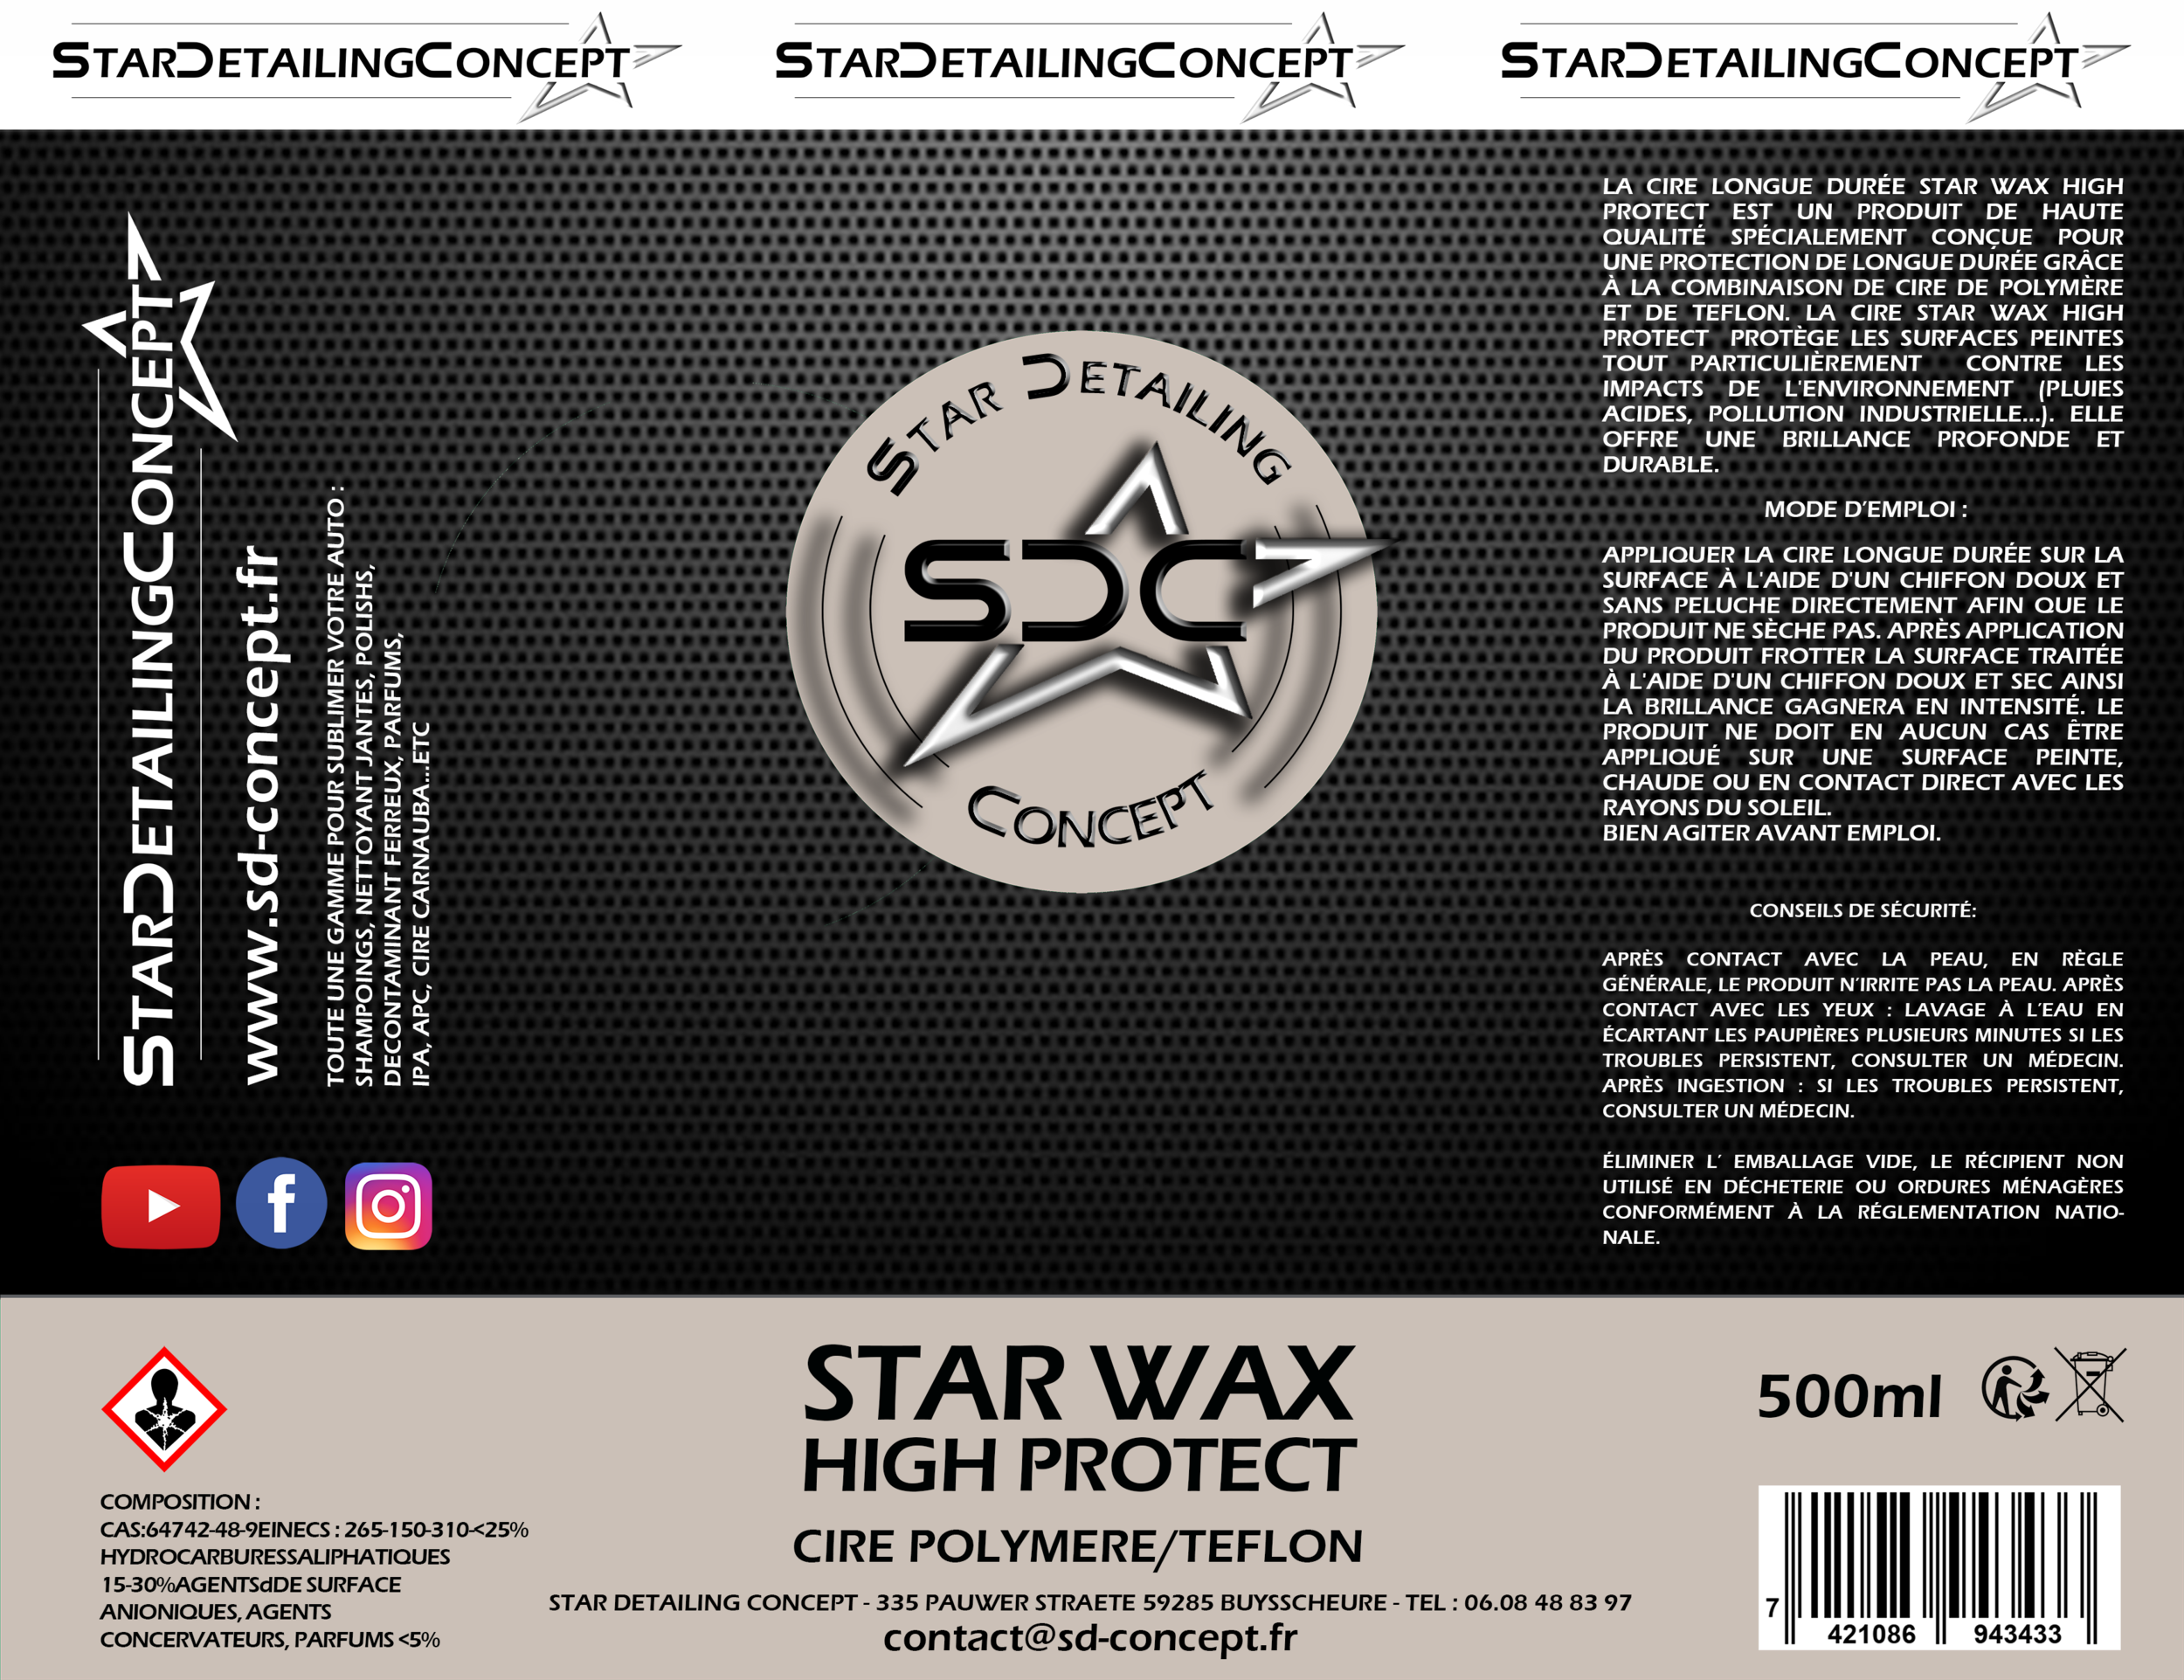 15 STAR WAX HIGH PROTECT OK LE 28 04 21